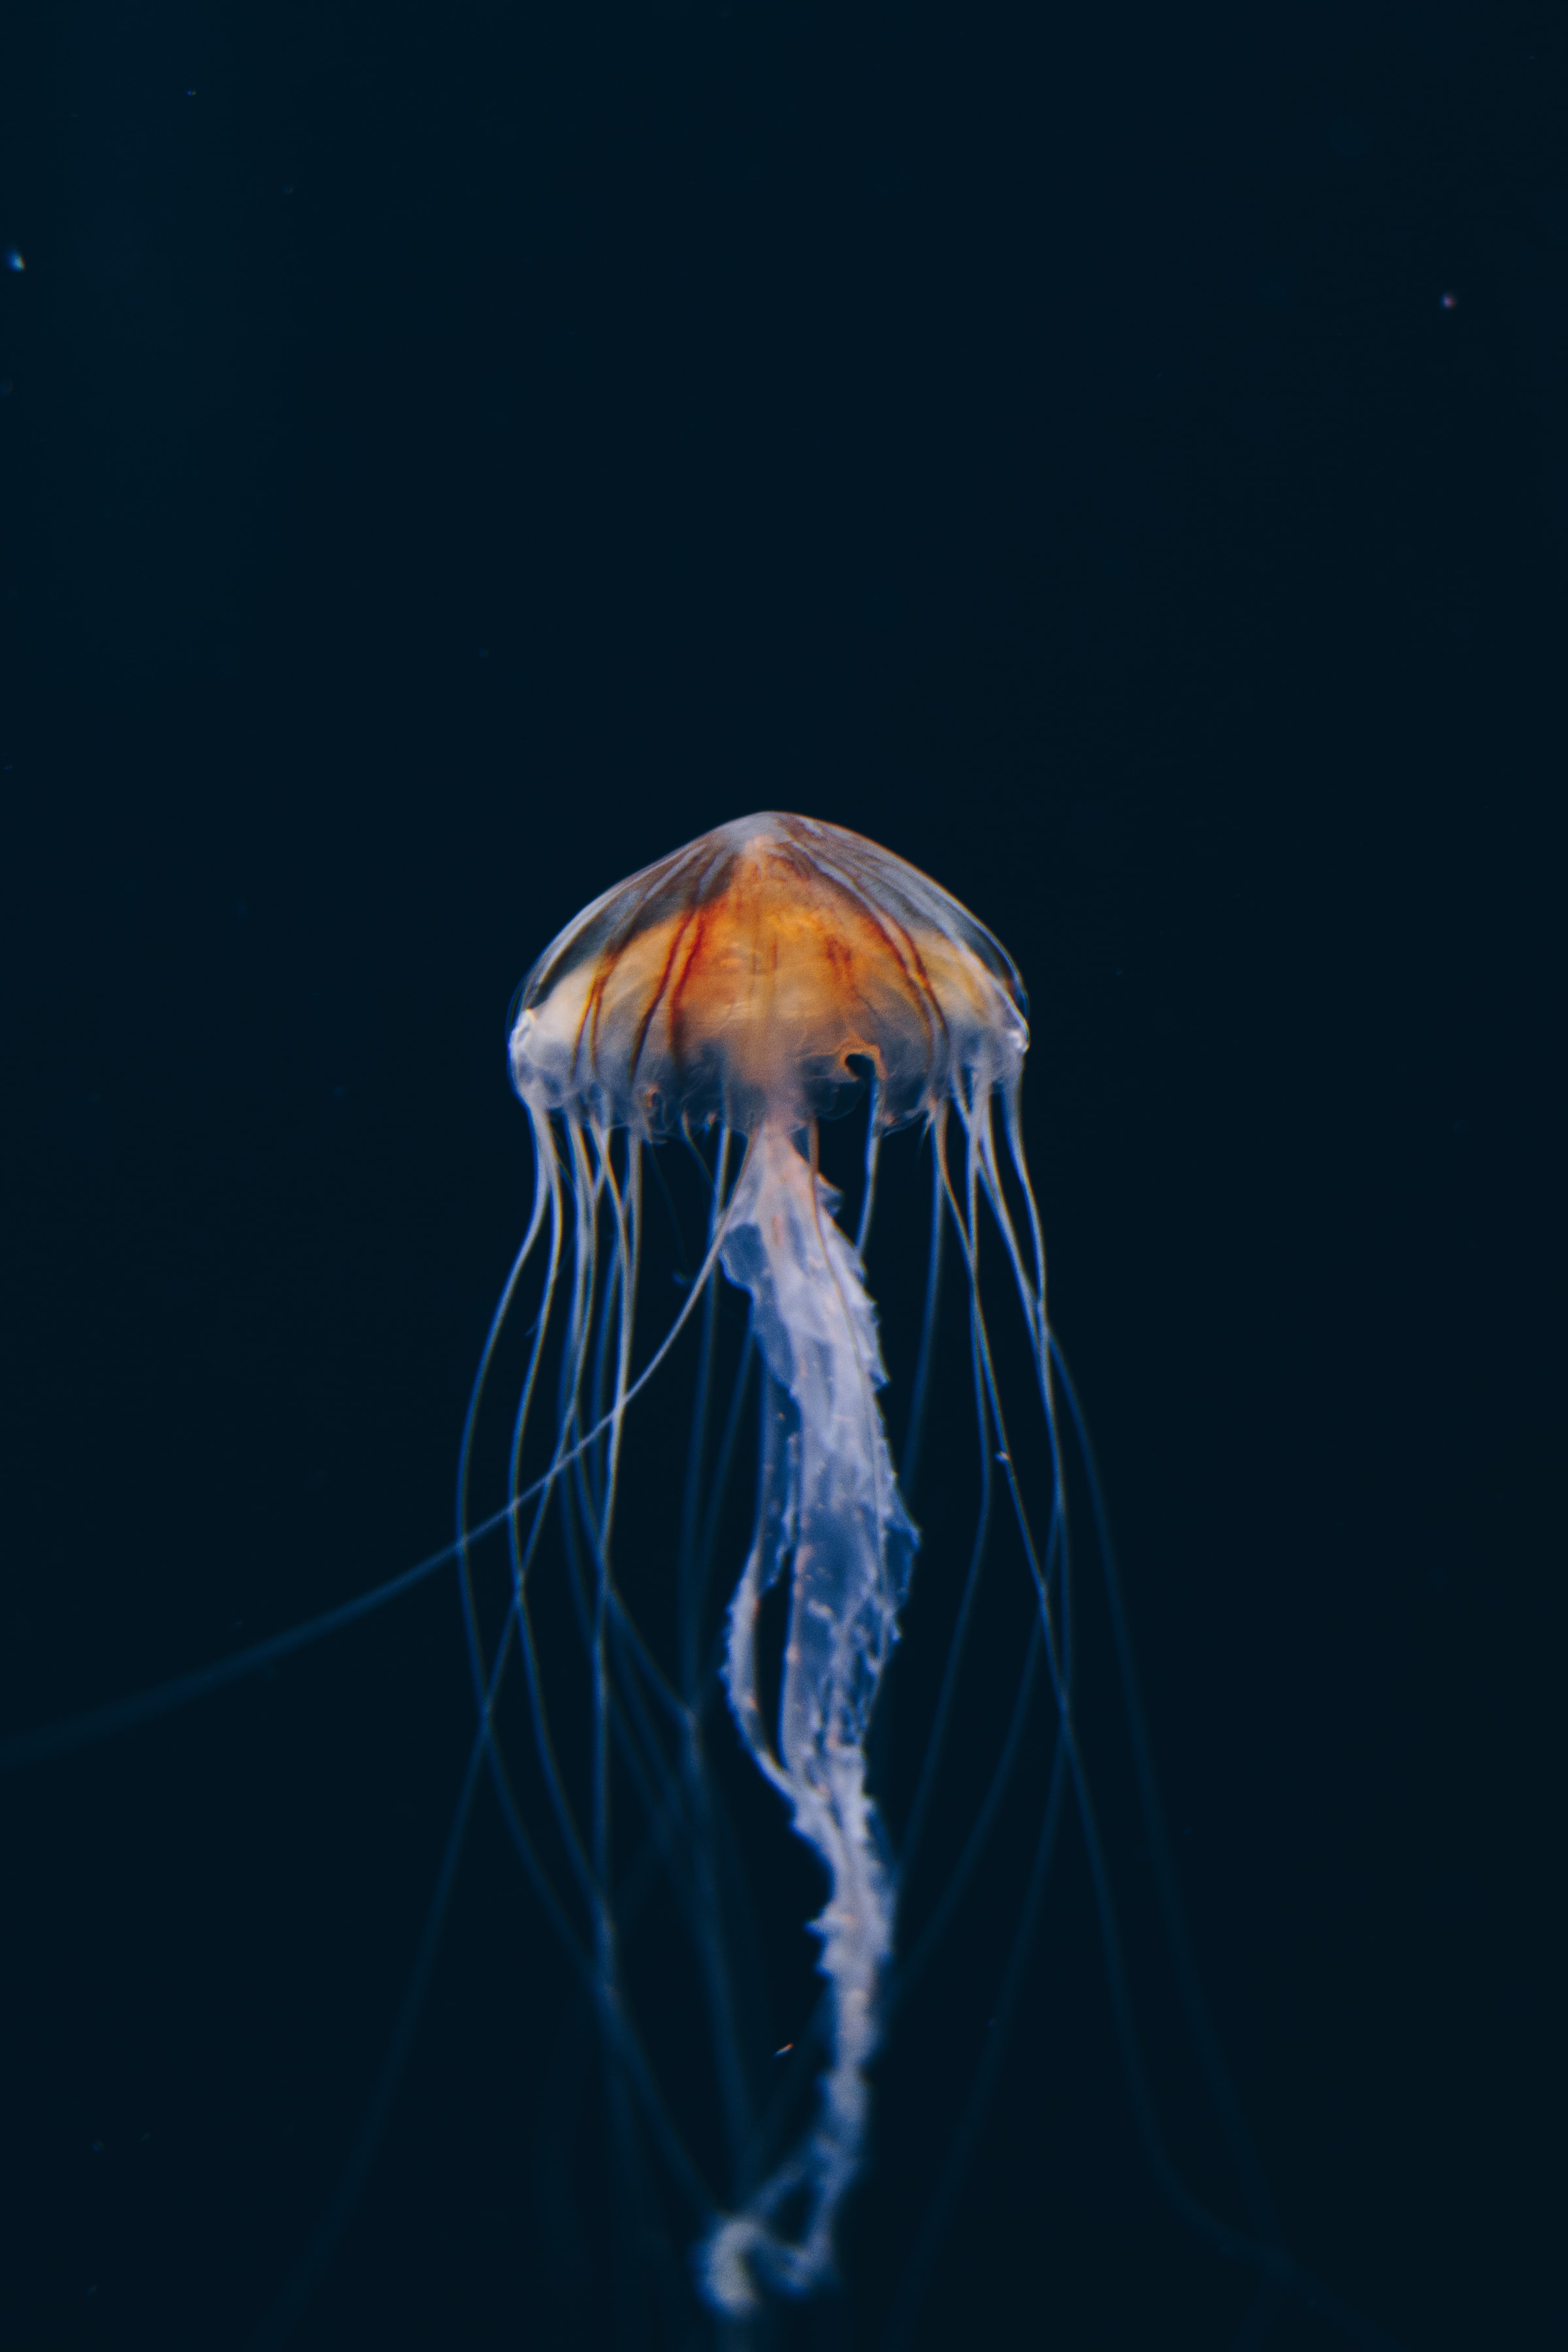 jellyfish, nature, water, dark, beautiful, underwater world phone wallpaper